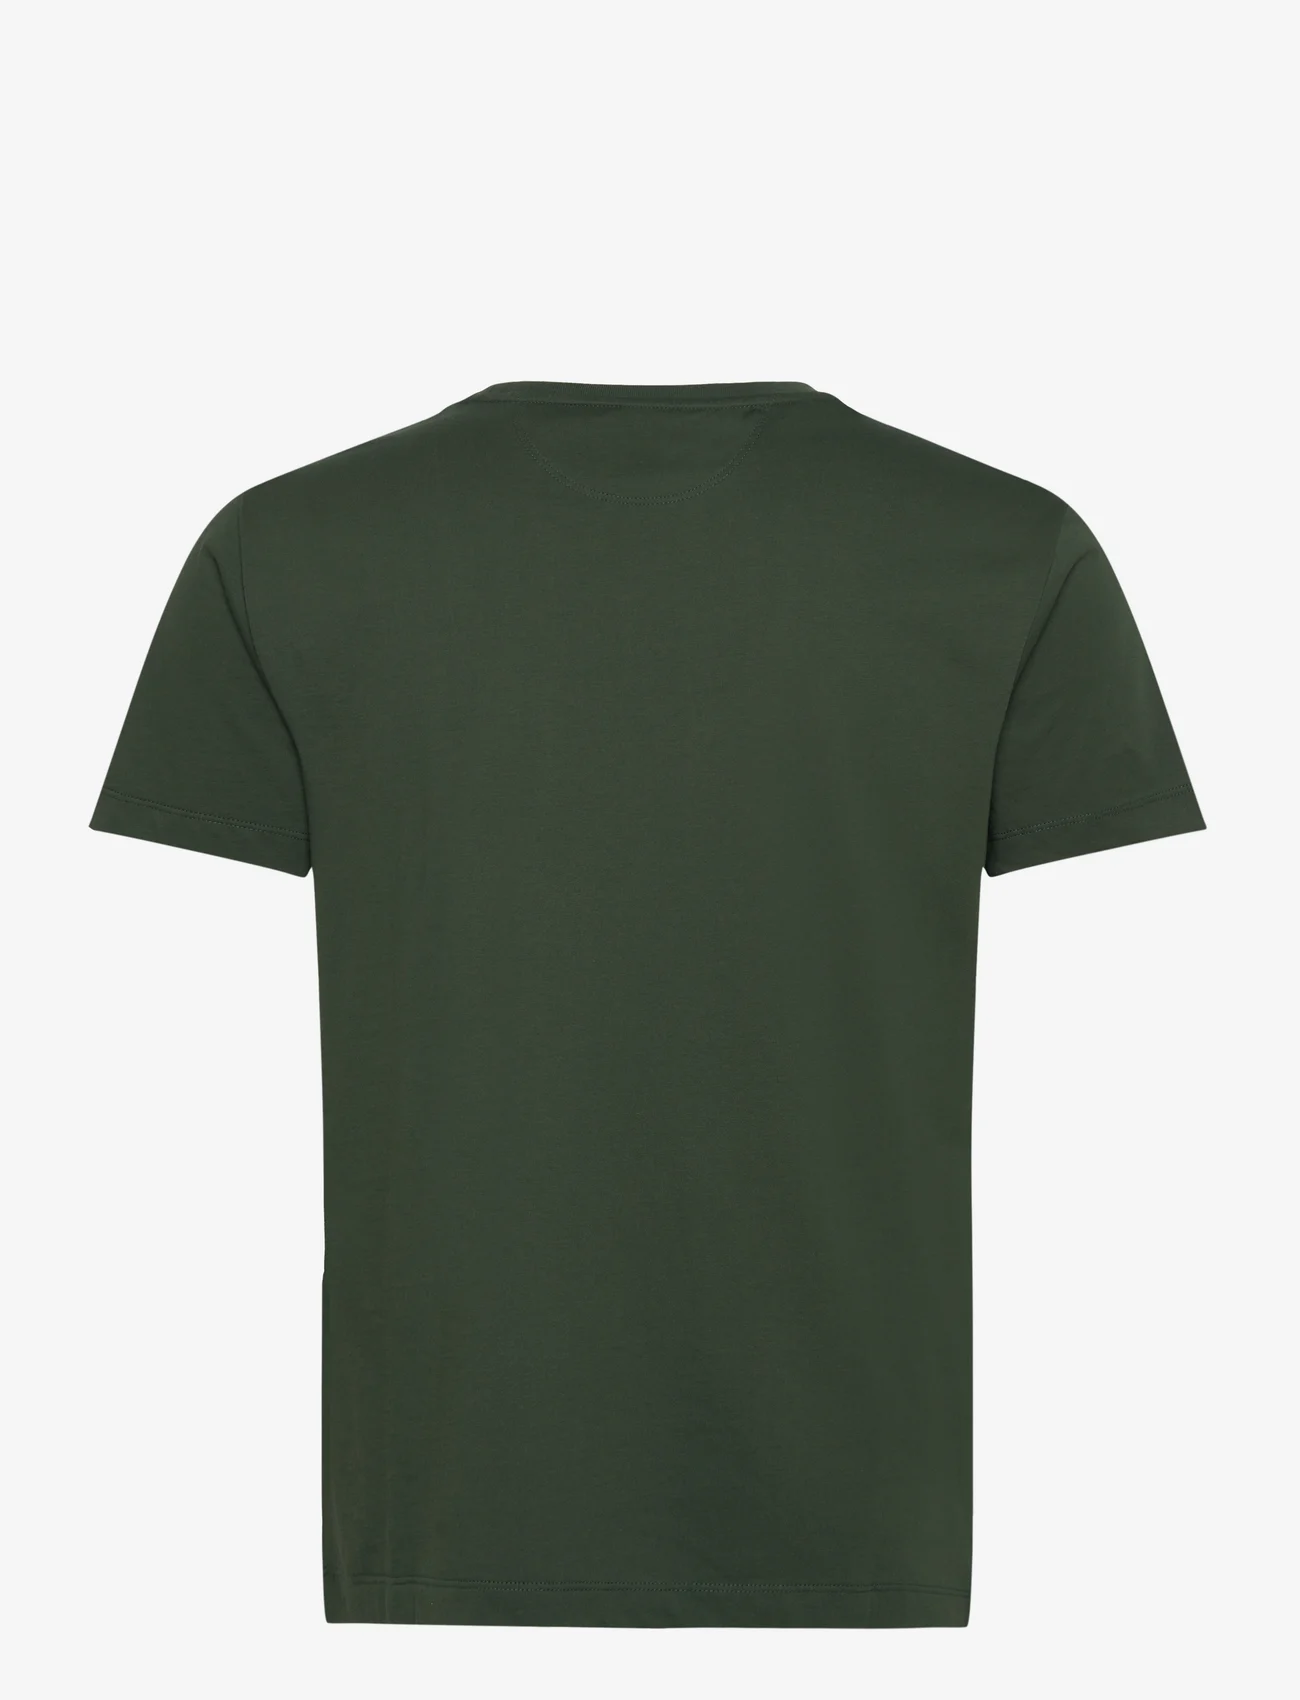 Hackett London - PIMA COTTON TEE - basis-t-skjorter - dark green - 1